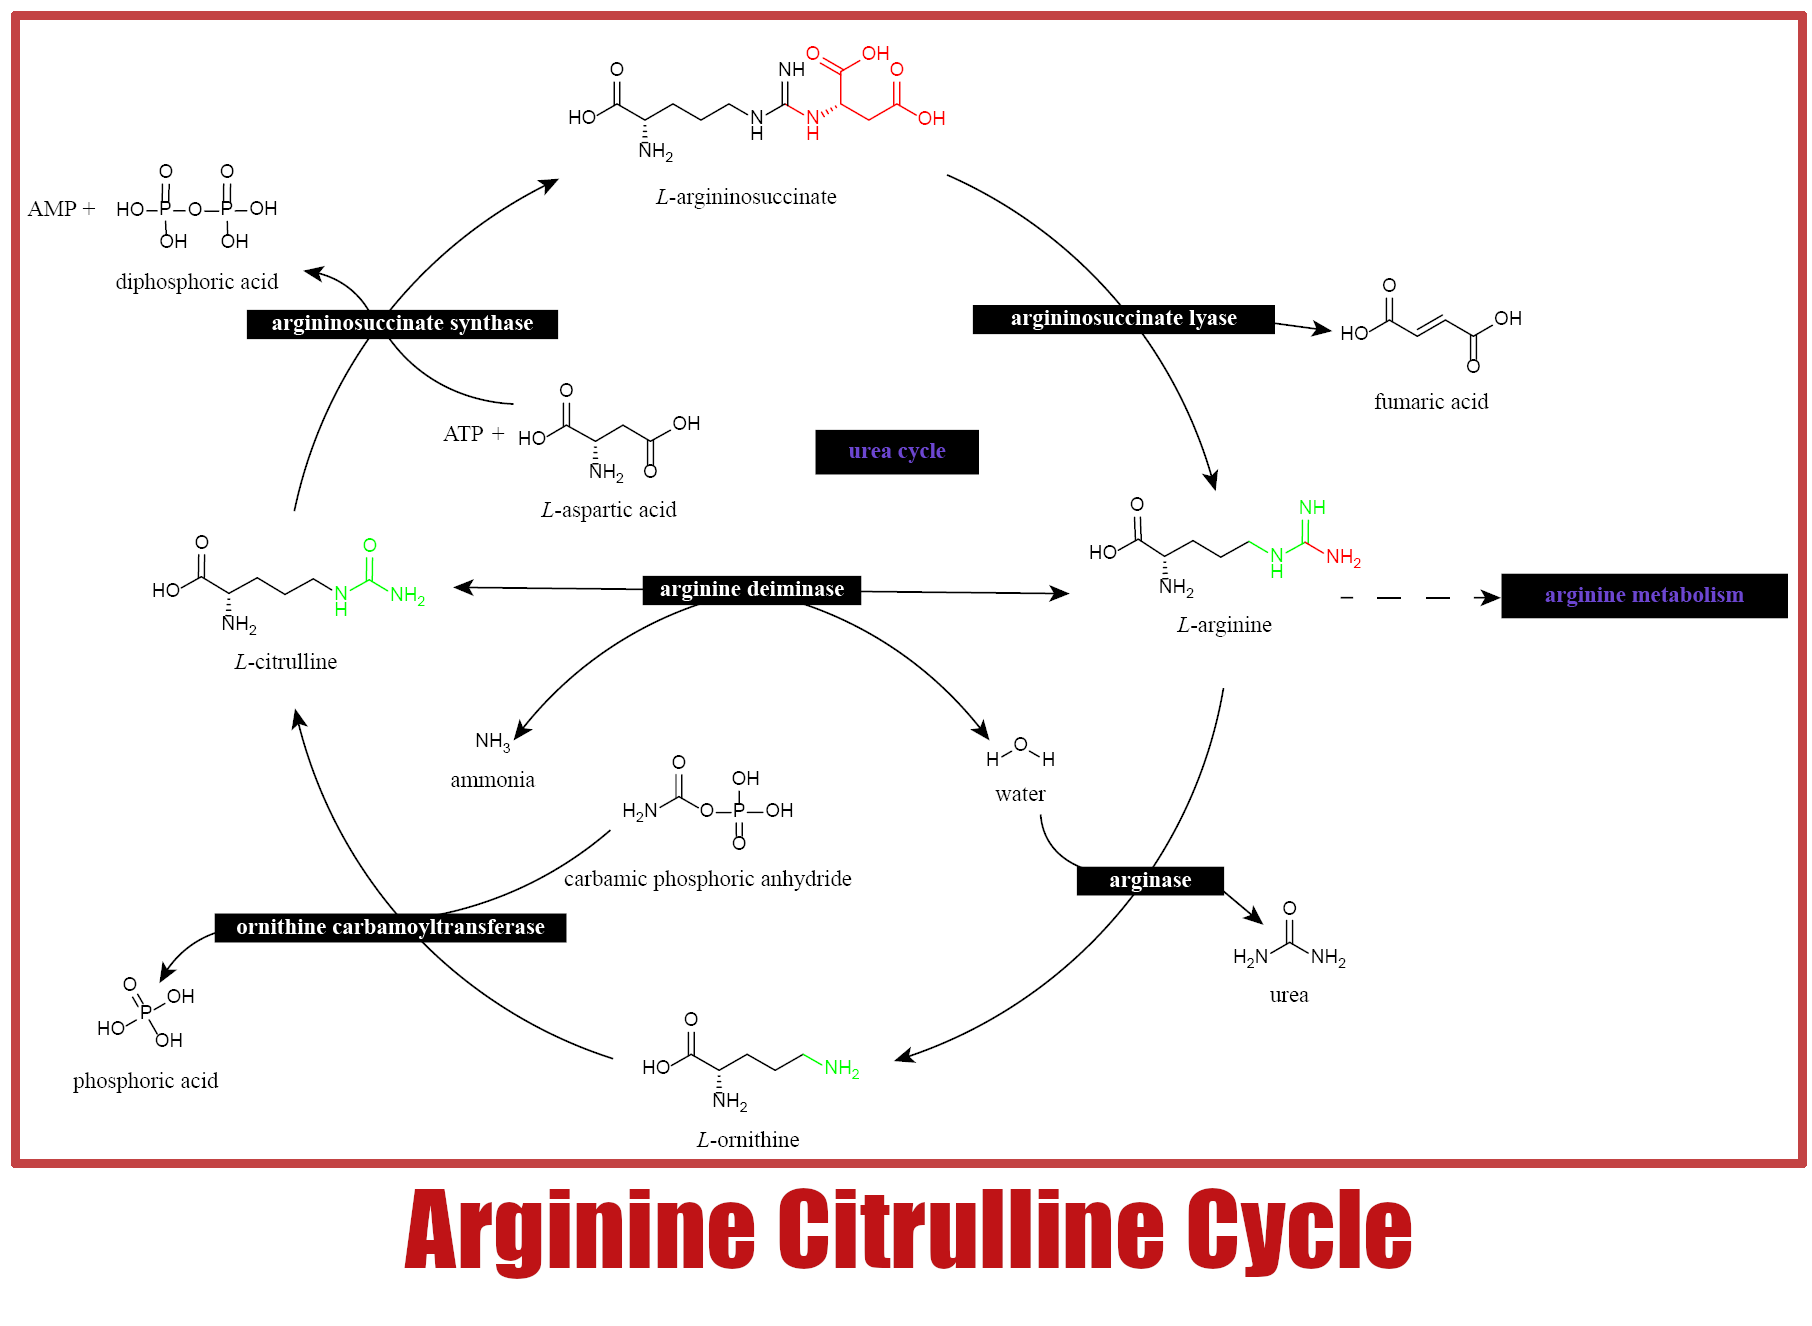 Arginine Citrulline Cycle